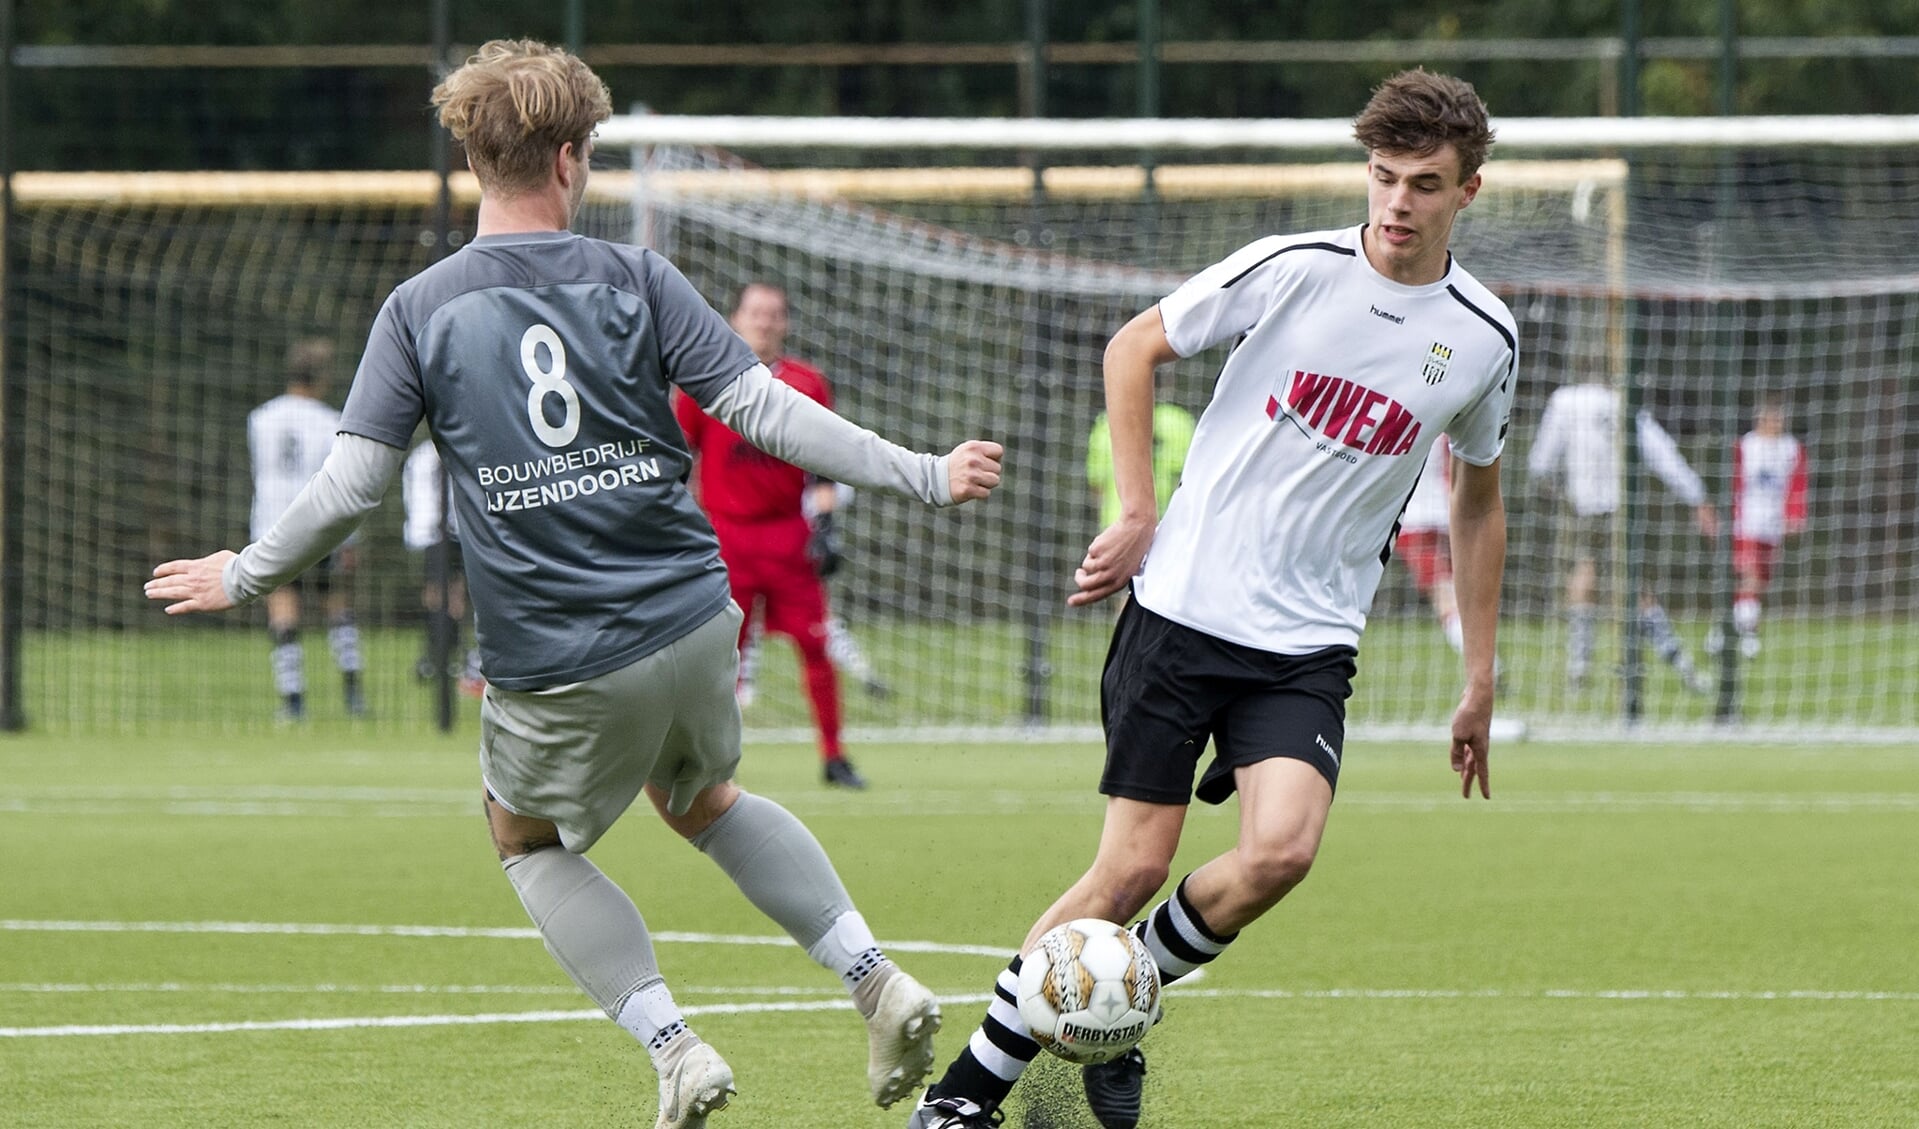 De jeugdige SVMM-middenvelder Thom Lalkens speelde een voortreffelijke wedstrijd en bediende zijn voorwaartsen met subtiele passes op maat.